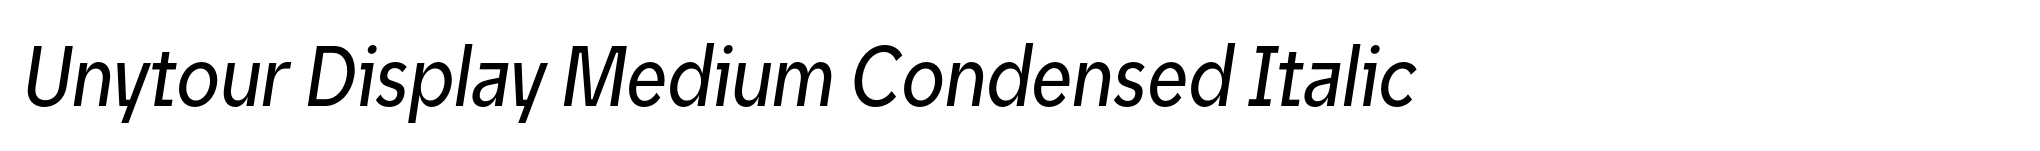 Unytour Display Medium Condensed Italic image